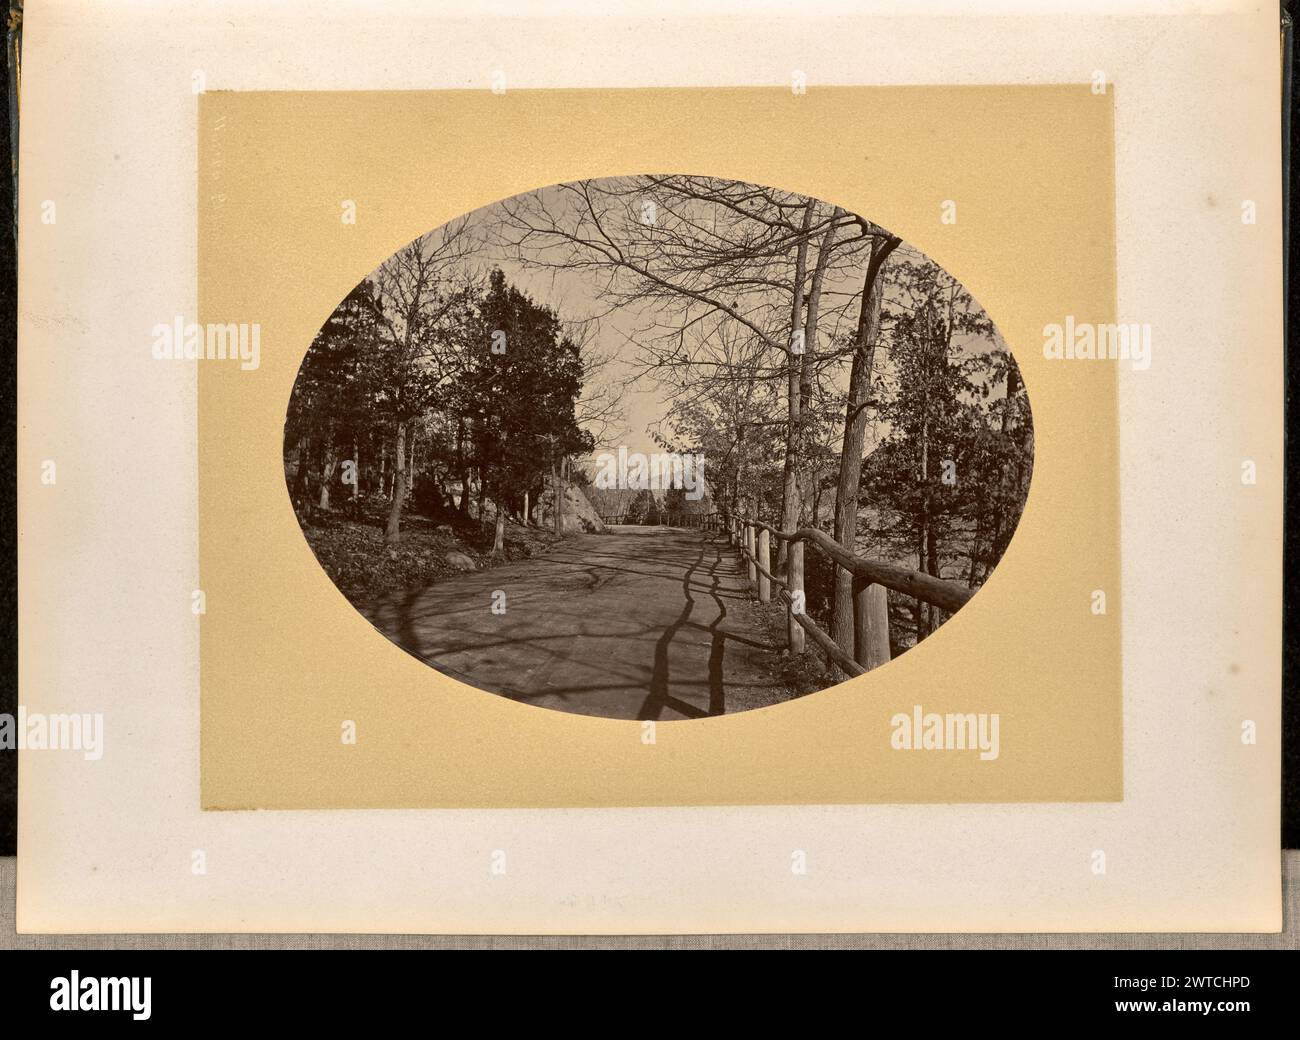 Road, West point. George Kendall Warren, photographe (américain, 1834 - 1884) 1868 vue d'une route non pavée qui s'étend au loin. La route est bordée d'un côté de balustrades en bois et d'arbres sans feuilles, comme visible sur la partie droite de l'image. Banque D'Images